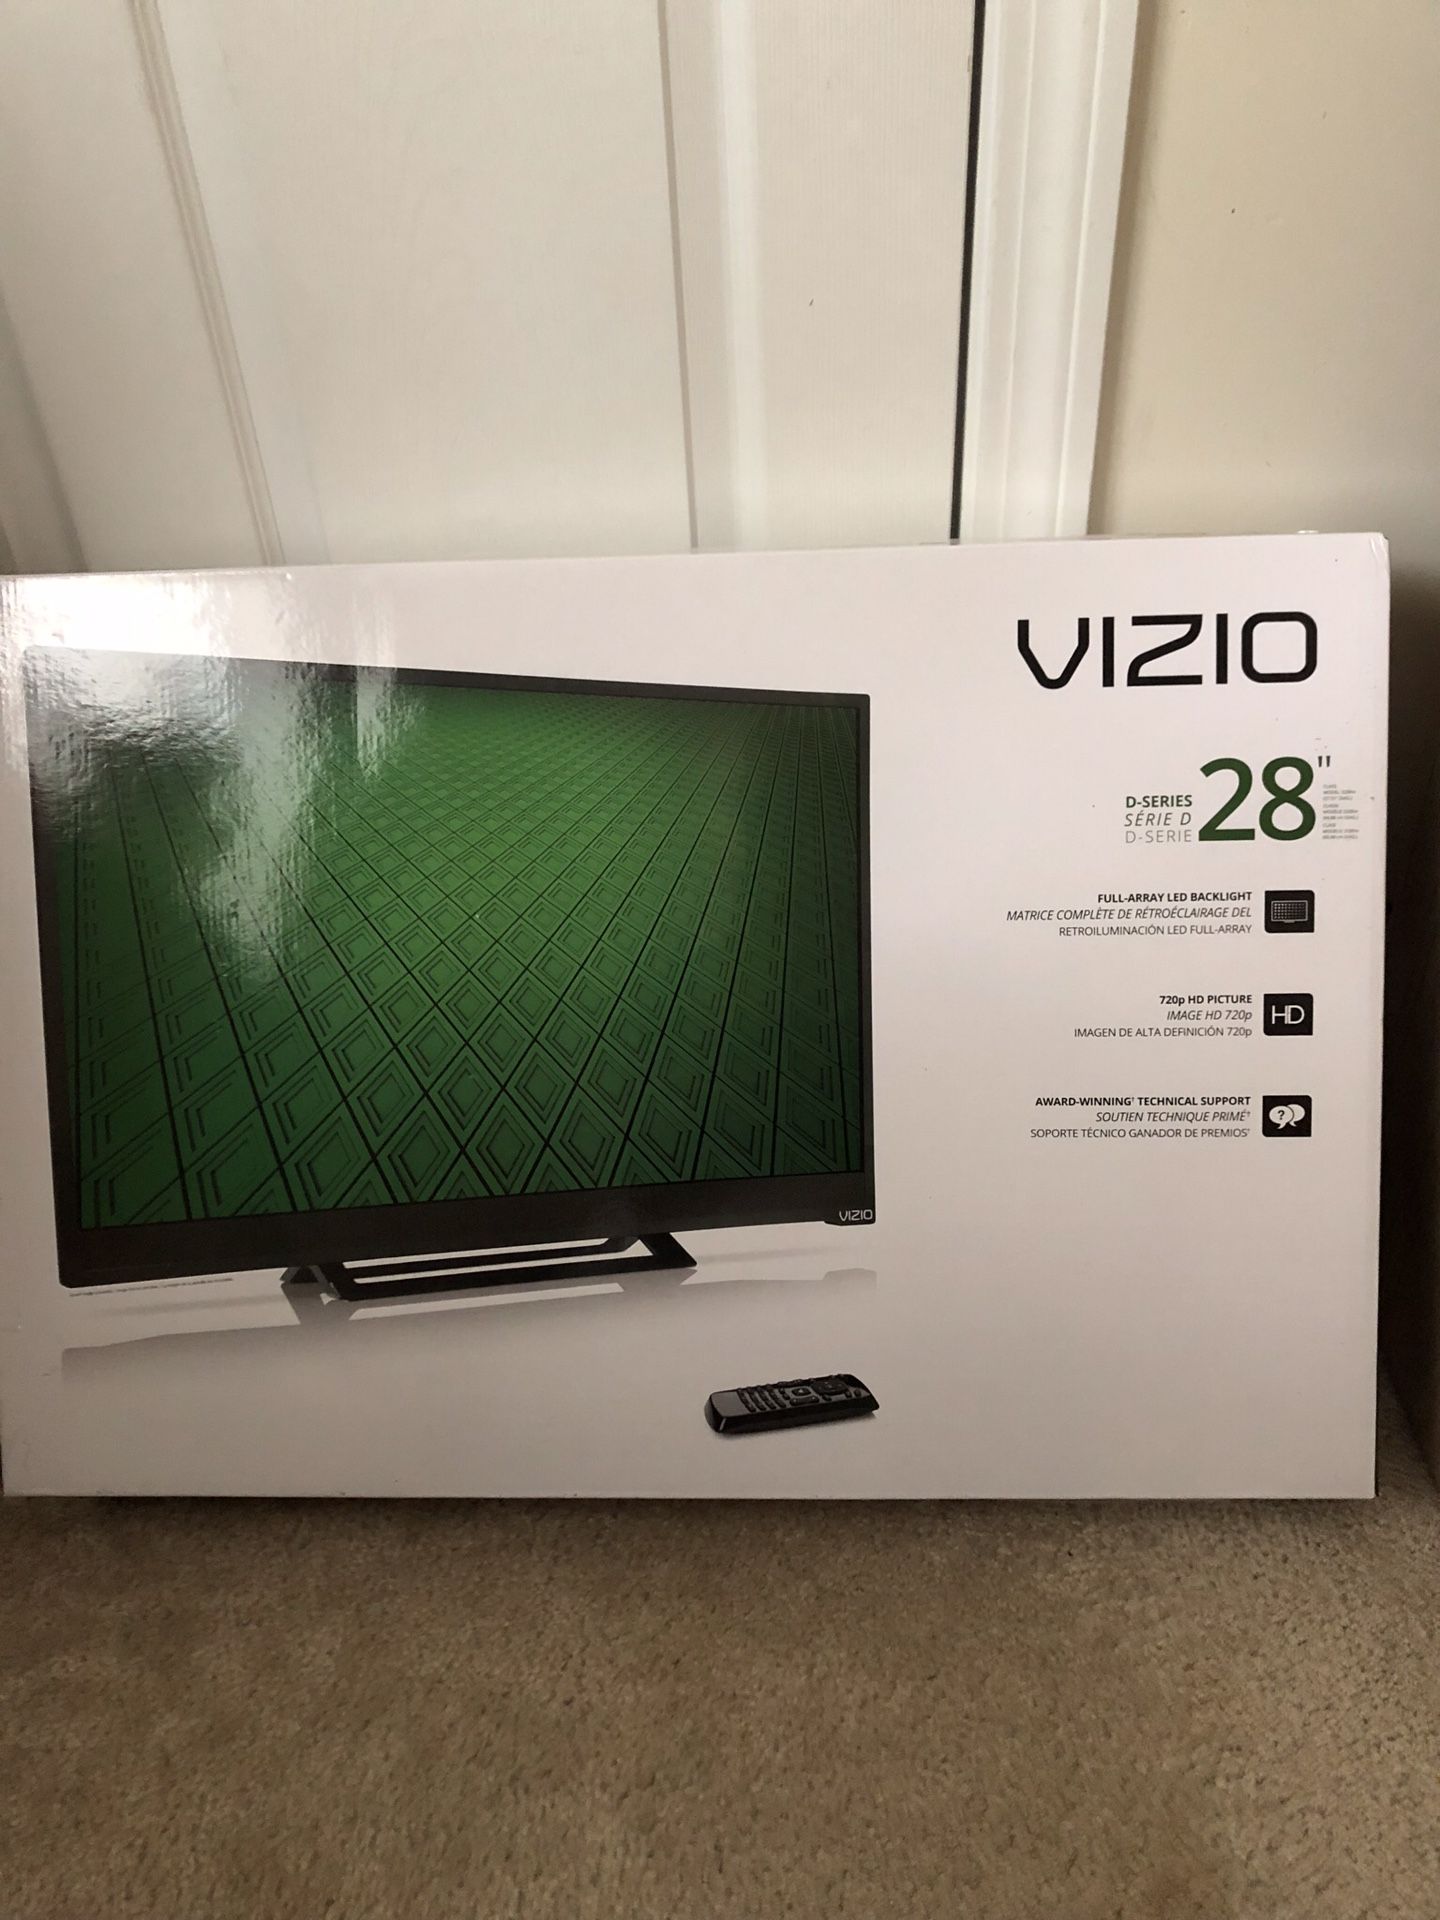 Brand new VIZIO TV in the box 28”